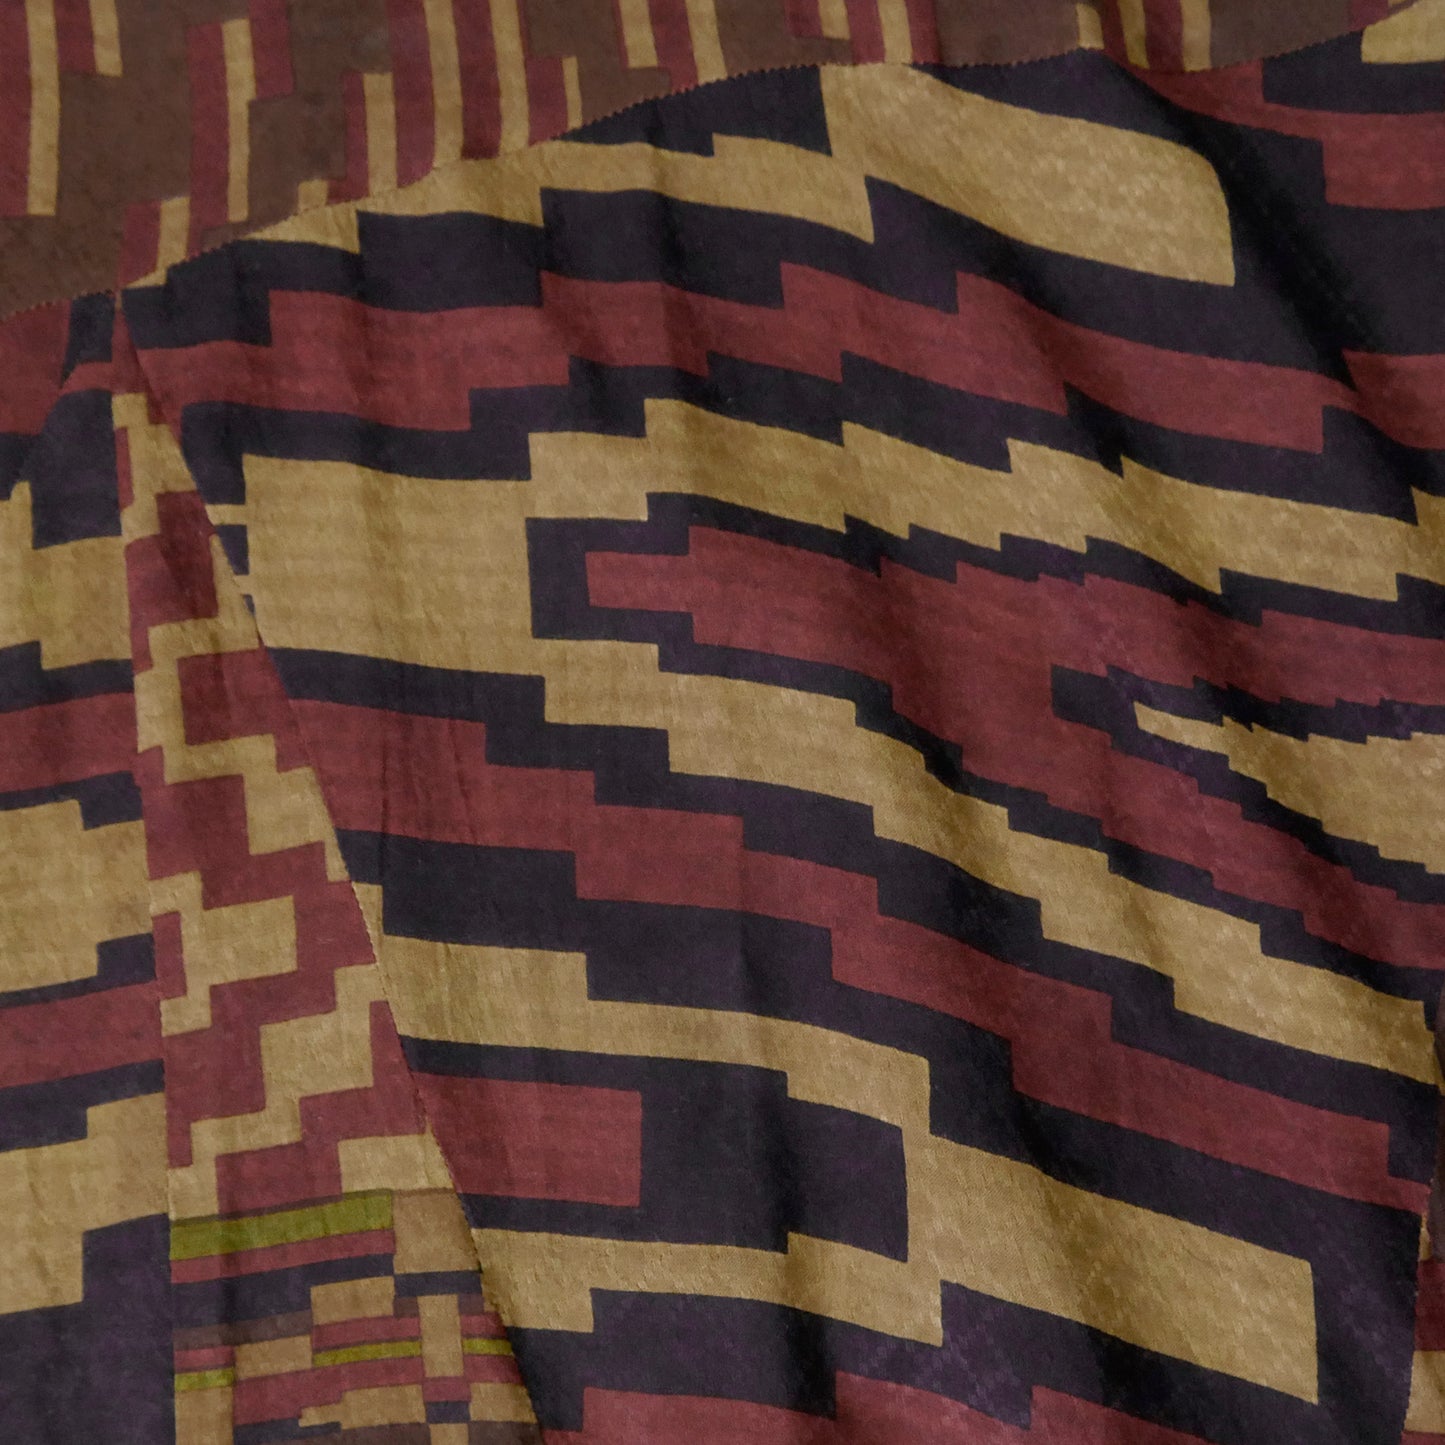 Baju Kimono Lurus Bermotif Jacquard Afrika Ry